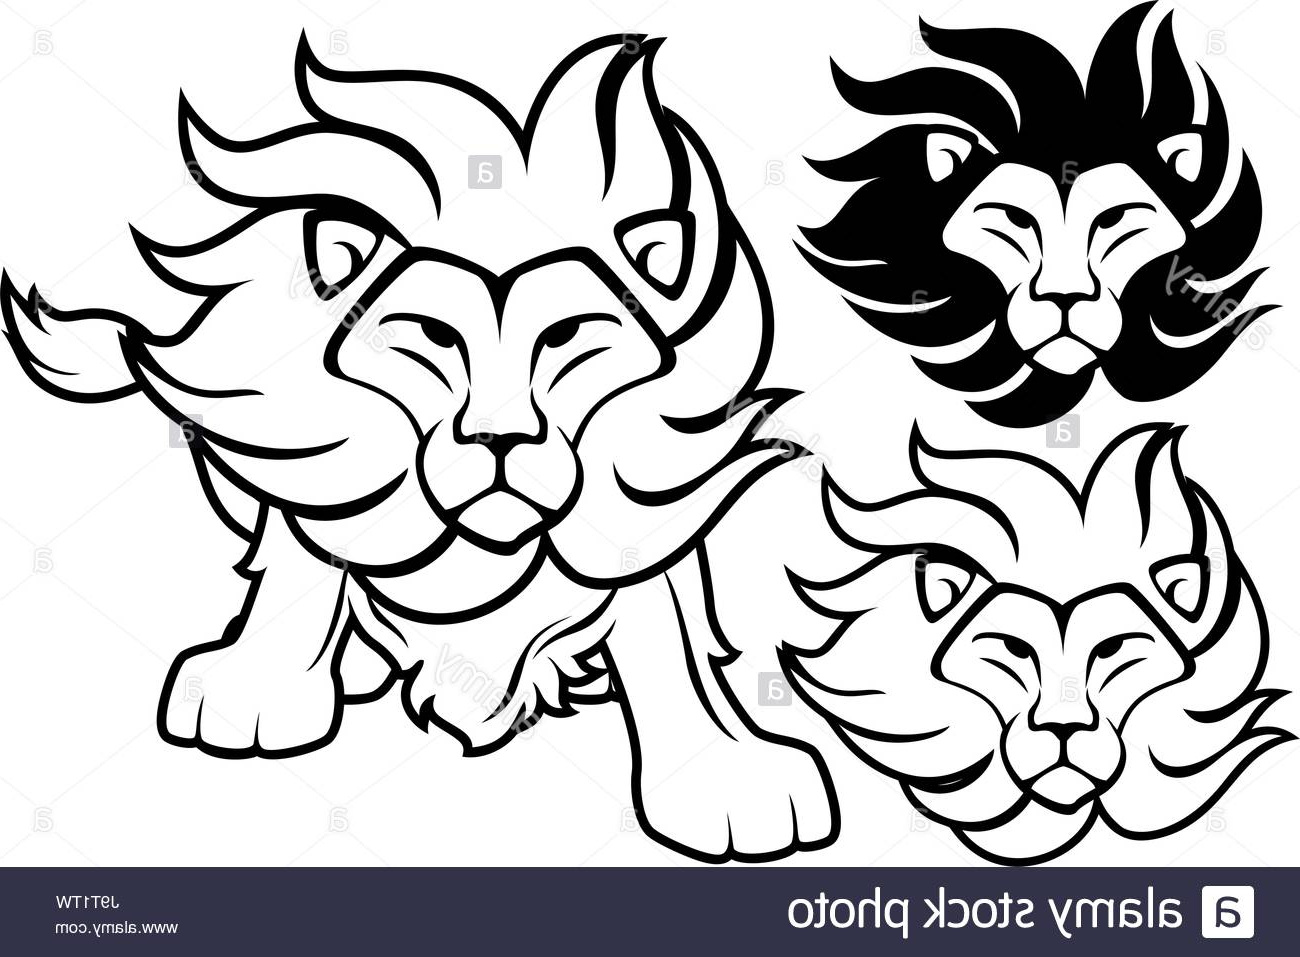 photo image vue de face de la tete de lion et dessins isole sur fond blanc en format vectoriel tres facile a modifier des objets